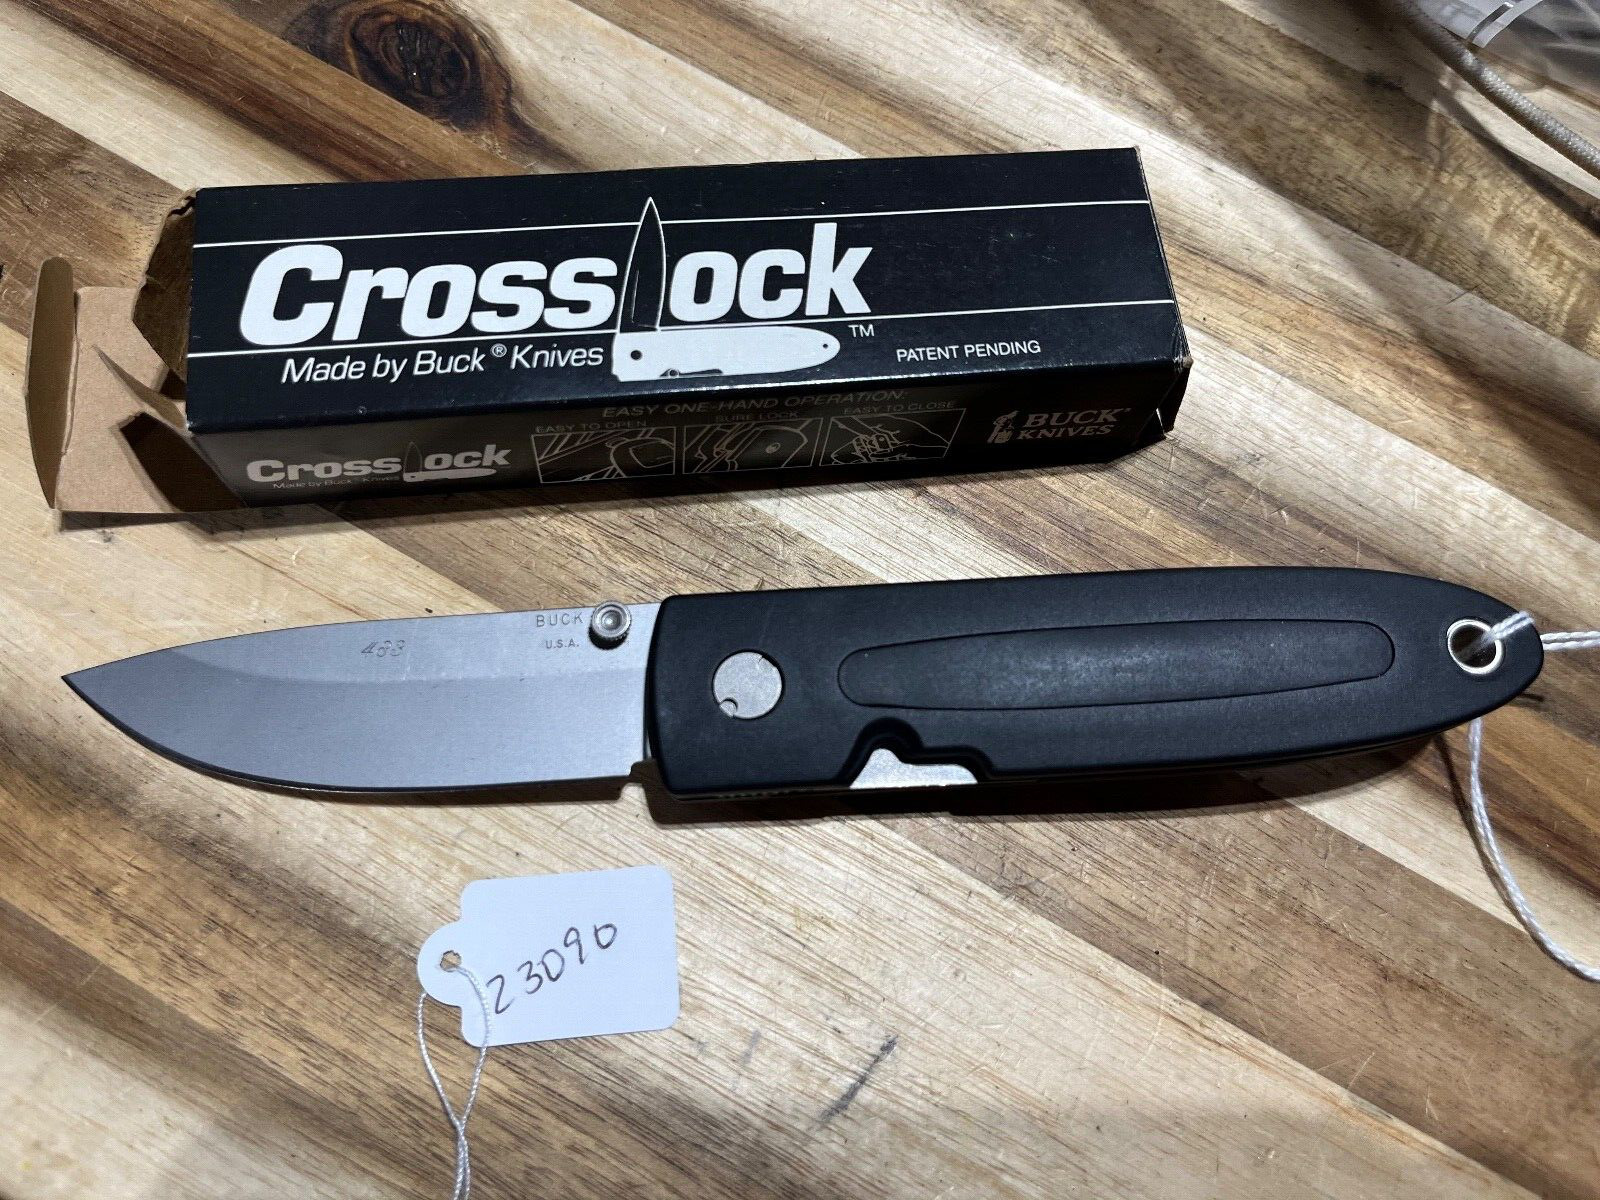 Rare Buck Crosslock knife engravings on blade (23090)